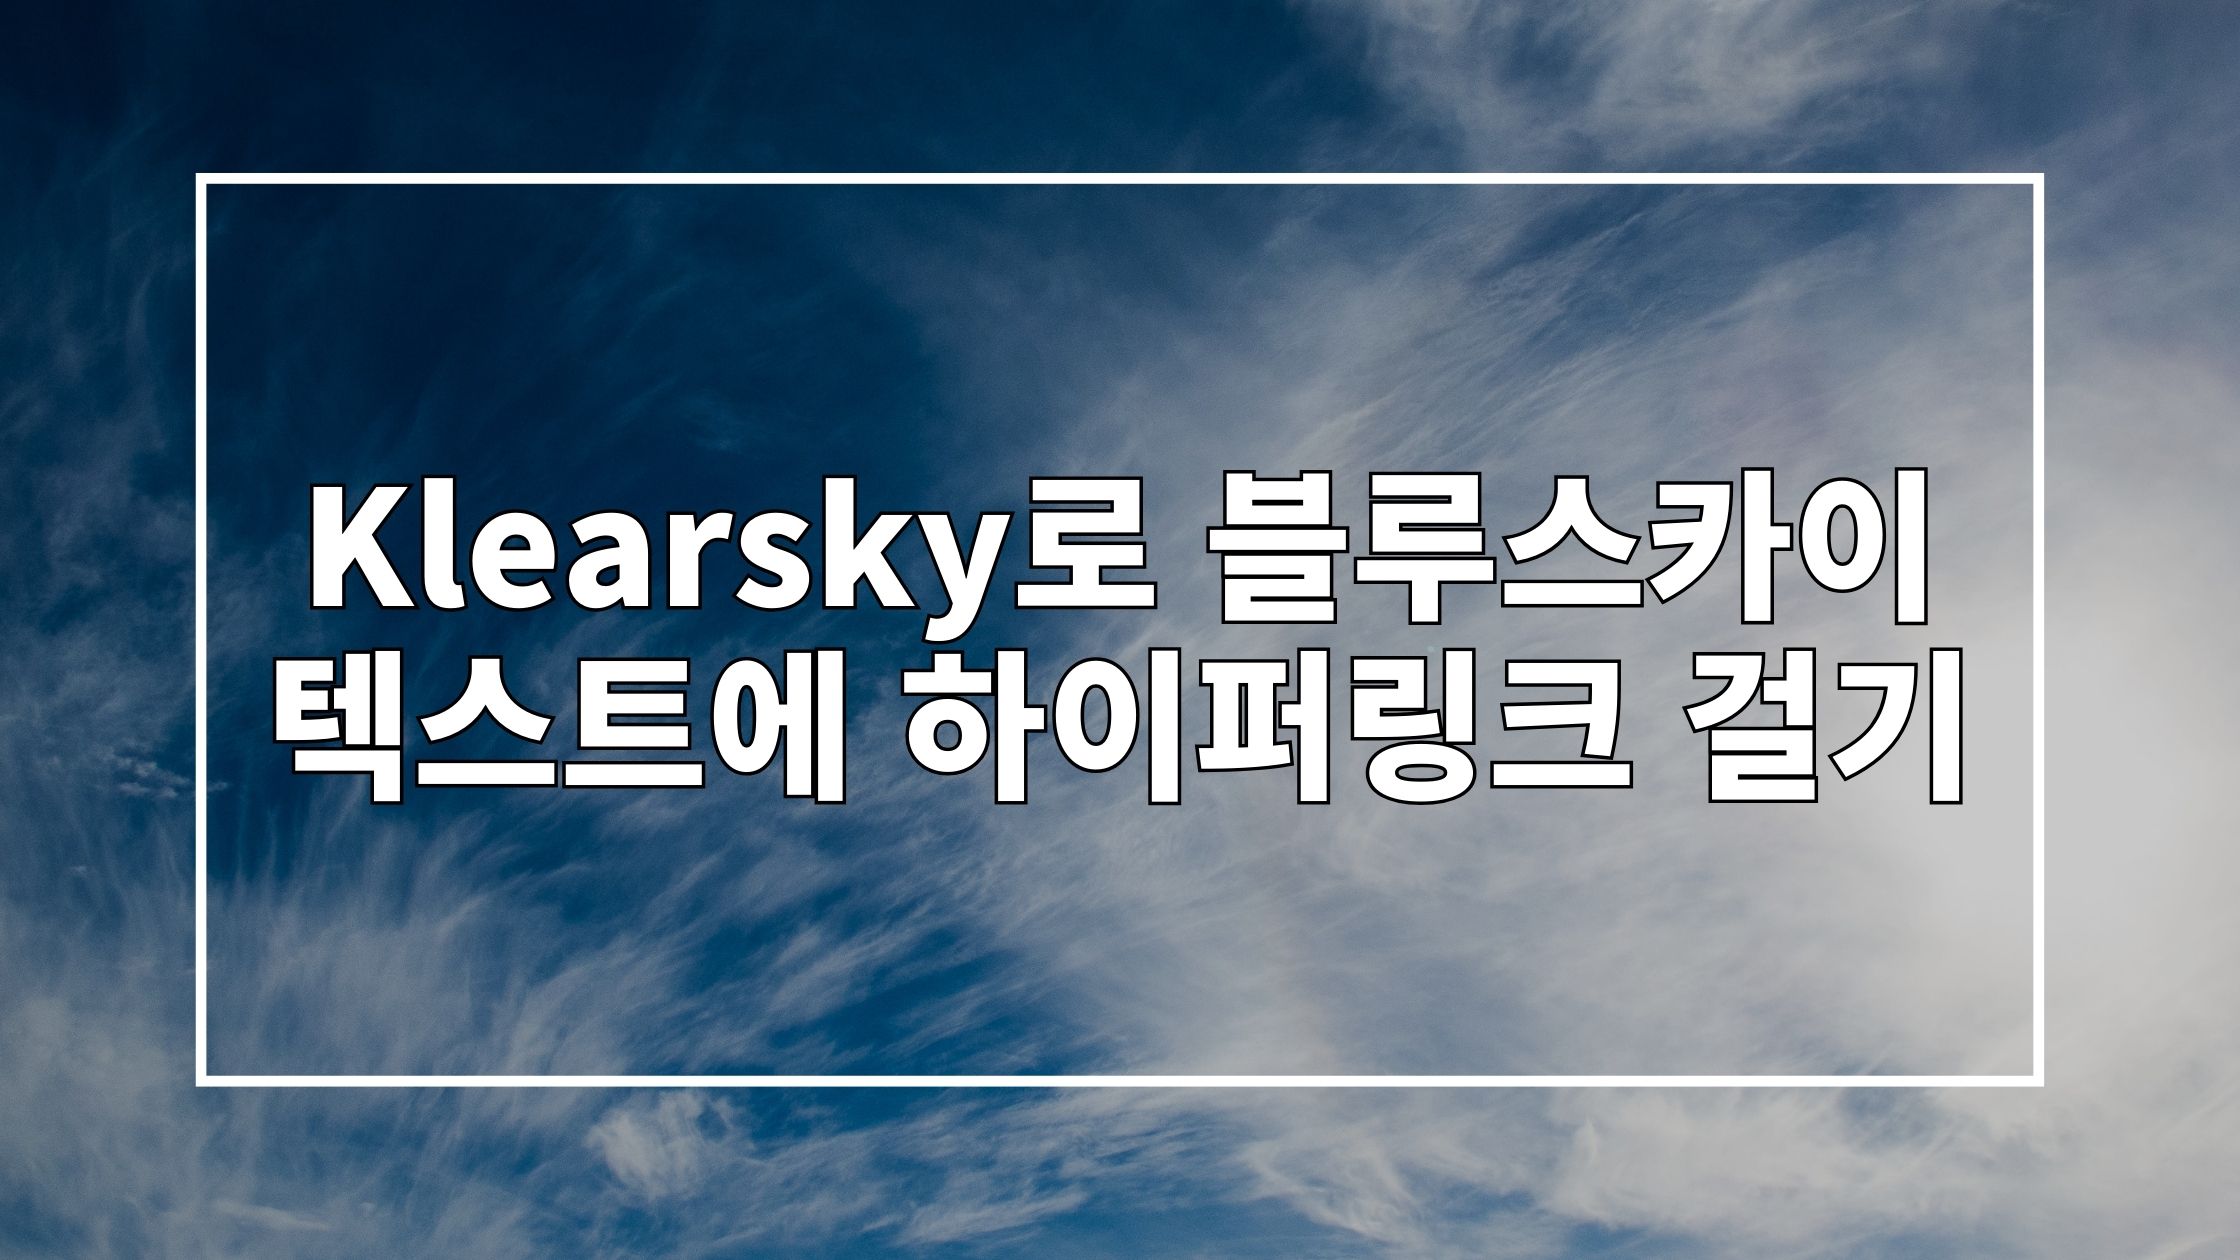 파란 하늘 사진 위에 'Klearsky로 블루스카이 텍스트에 하이퍼링크 걸기'라고 쓰여있는 썸네일 이미지입니다.